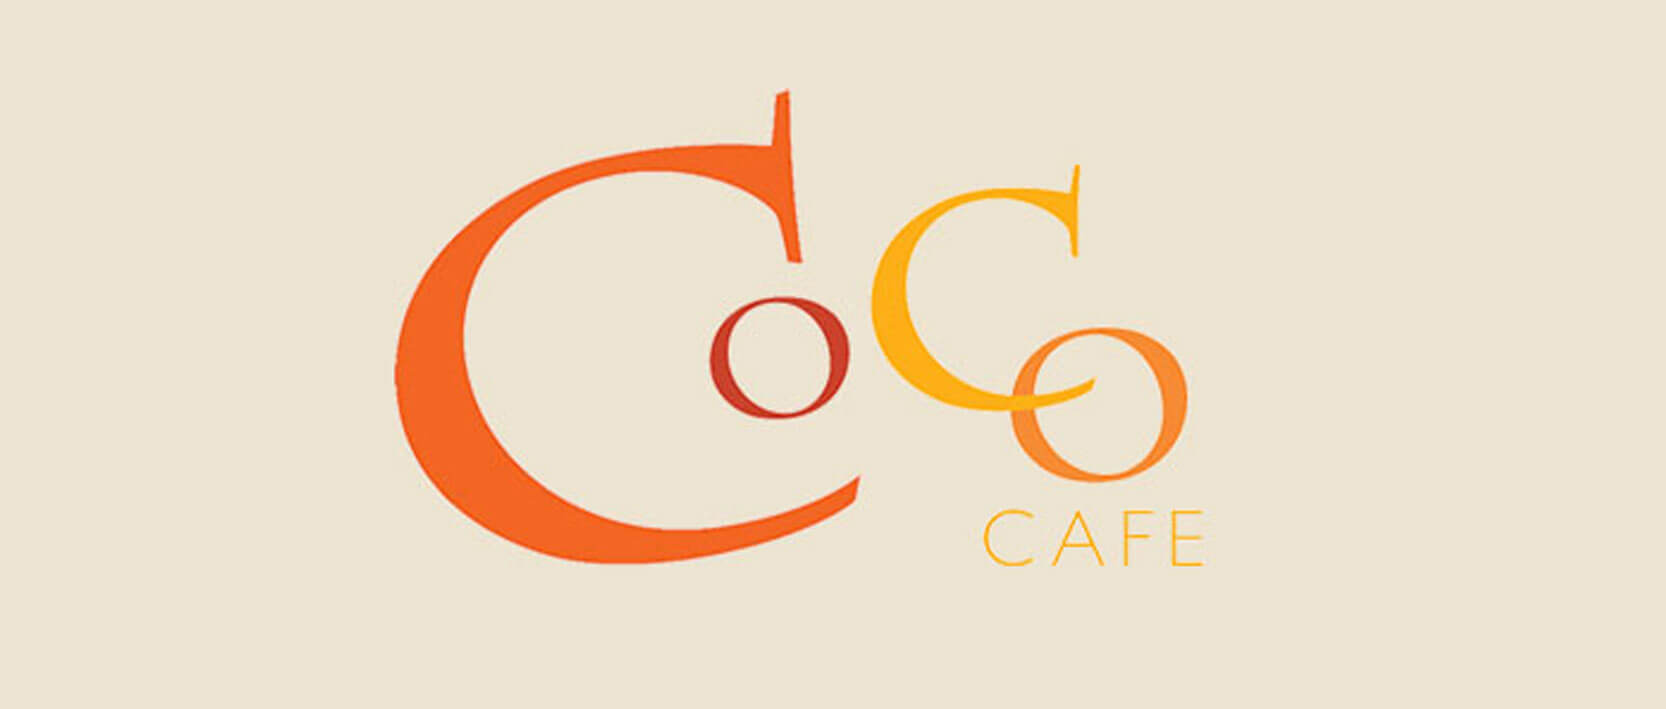 Dreams Villamagna Nuevo Vallarta Restaurants and Bars - Coco Cafe